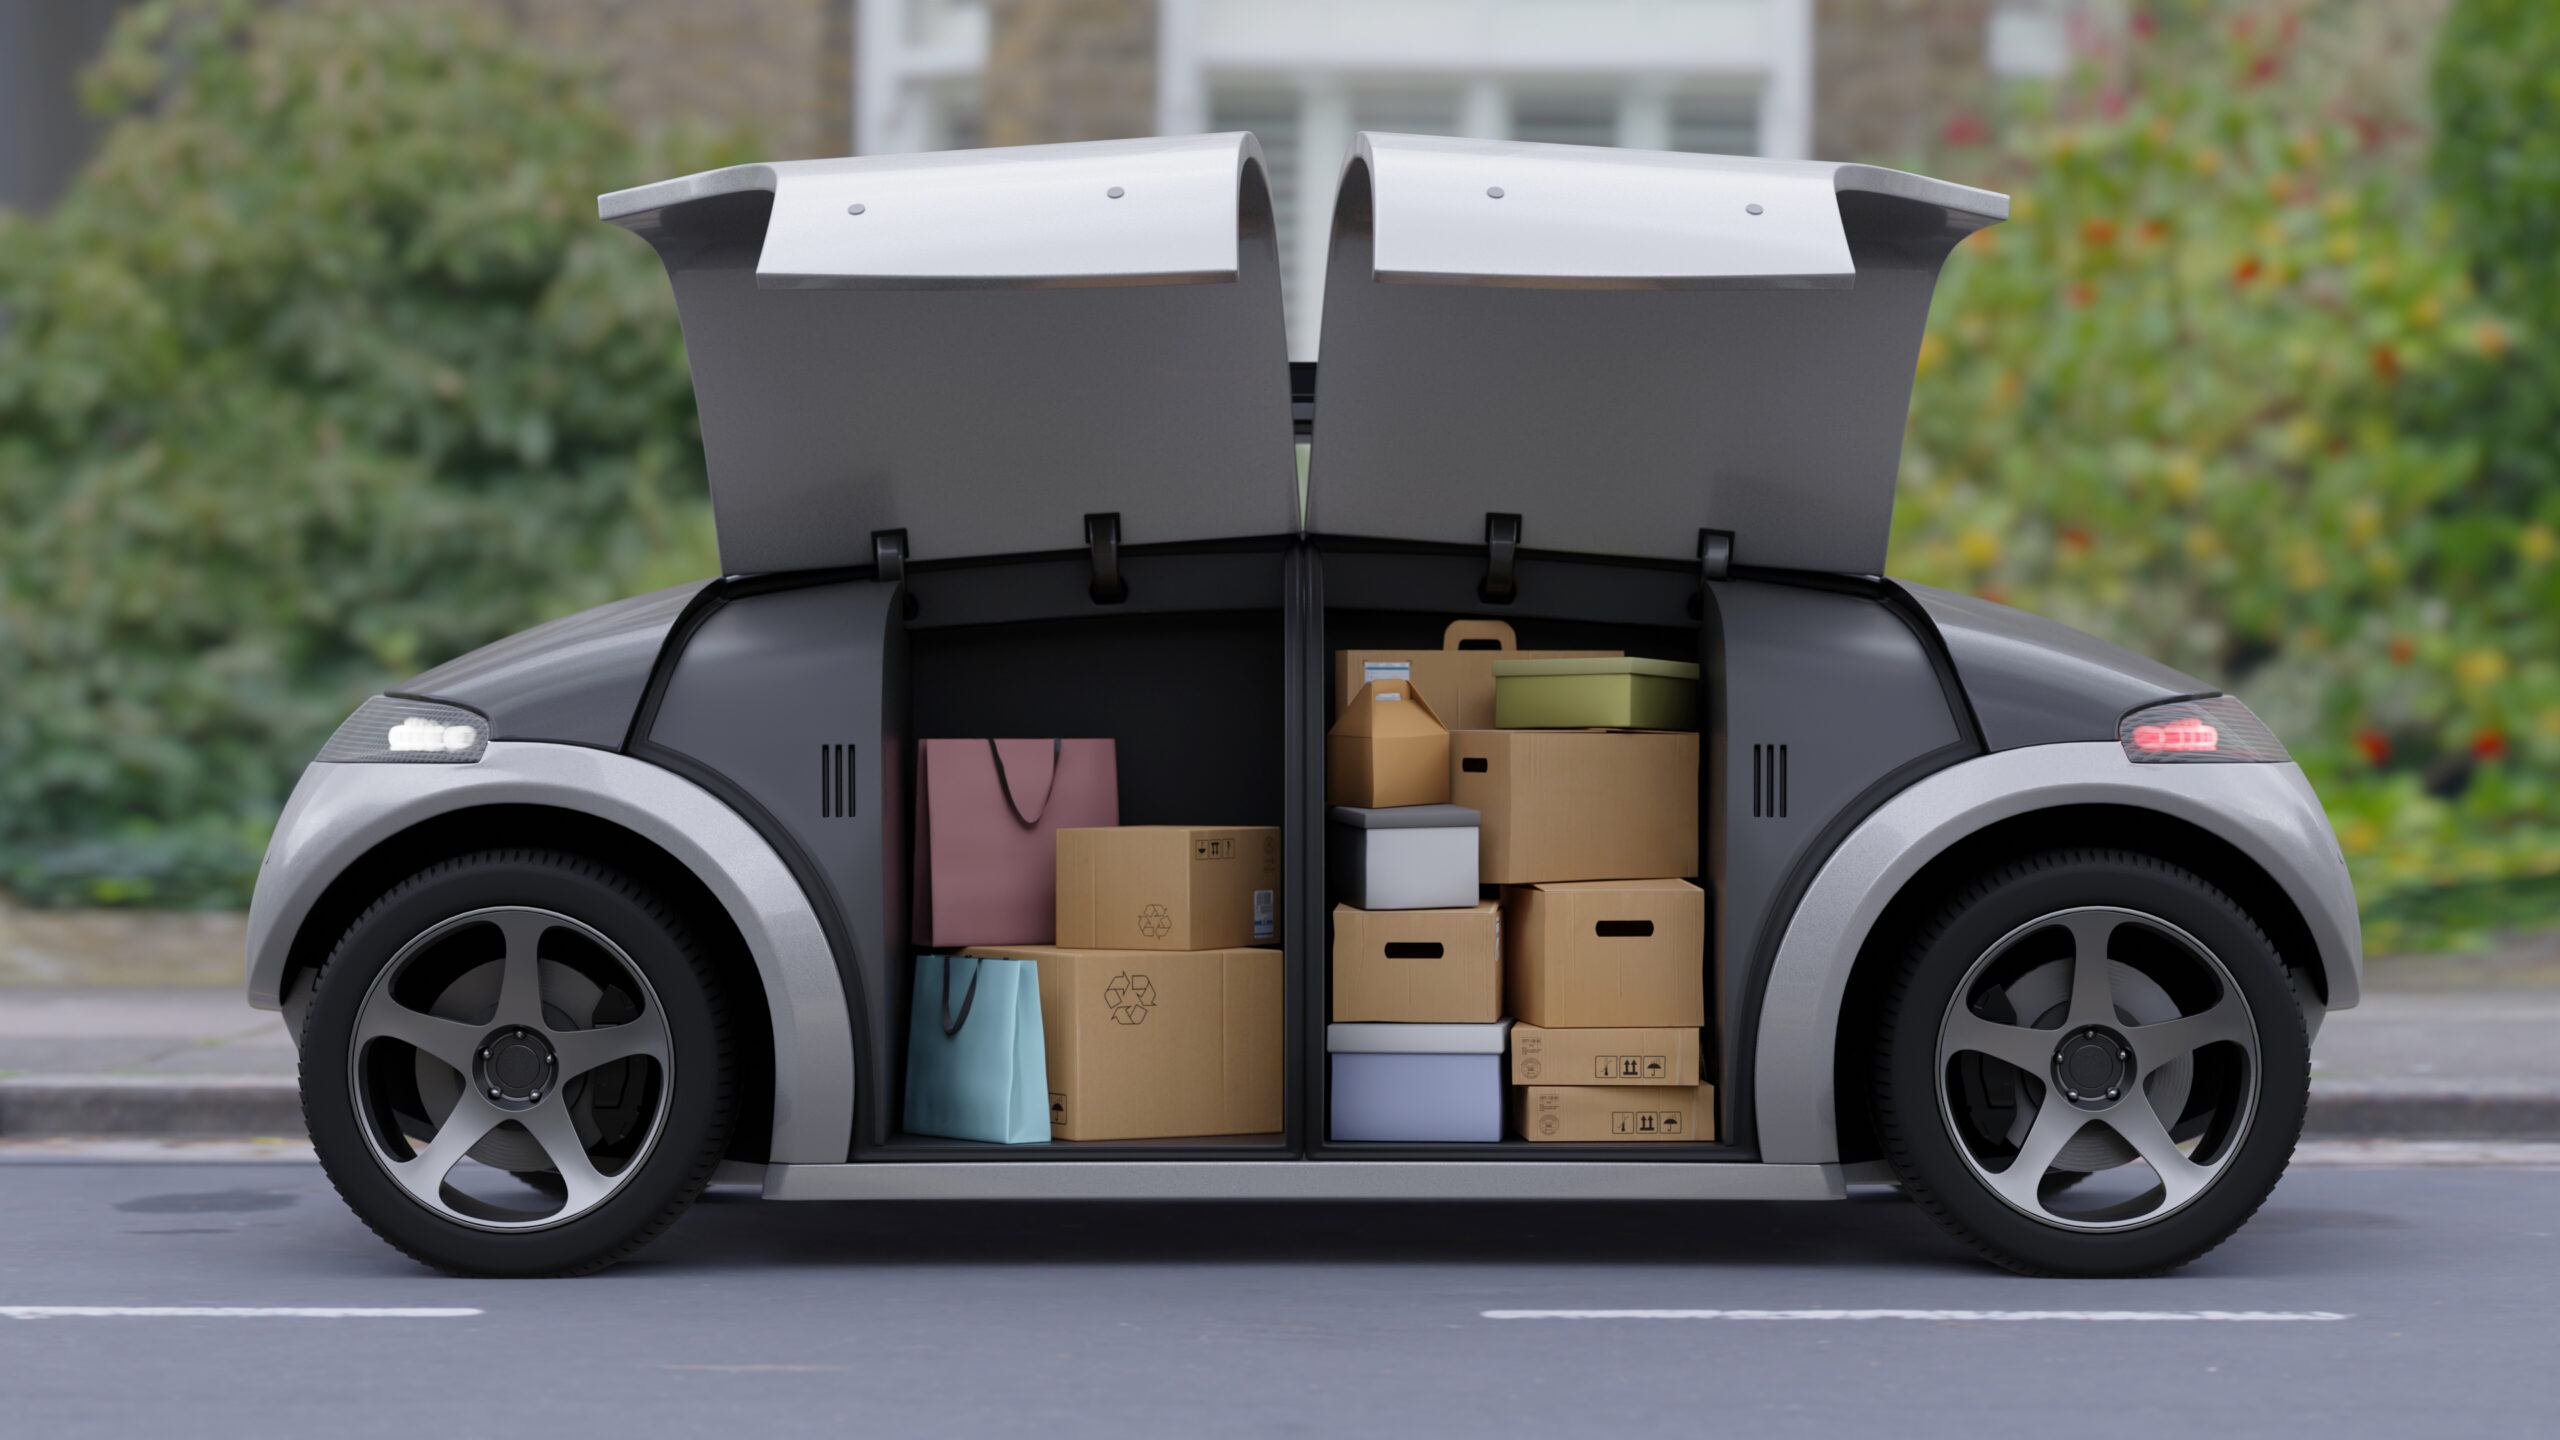 Autonomous package delivery vehicle